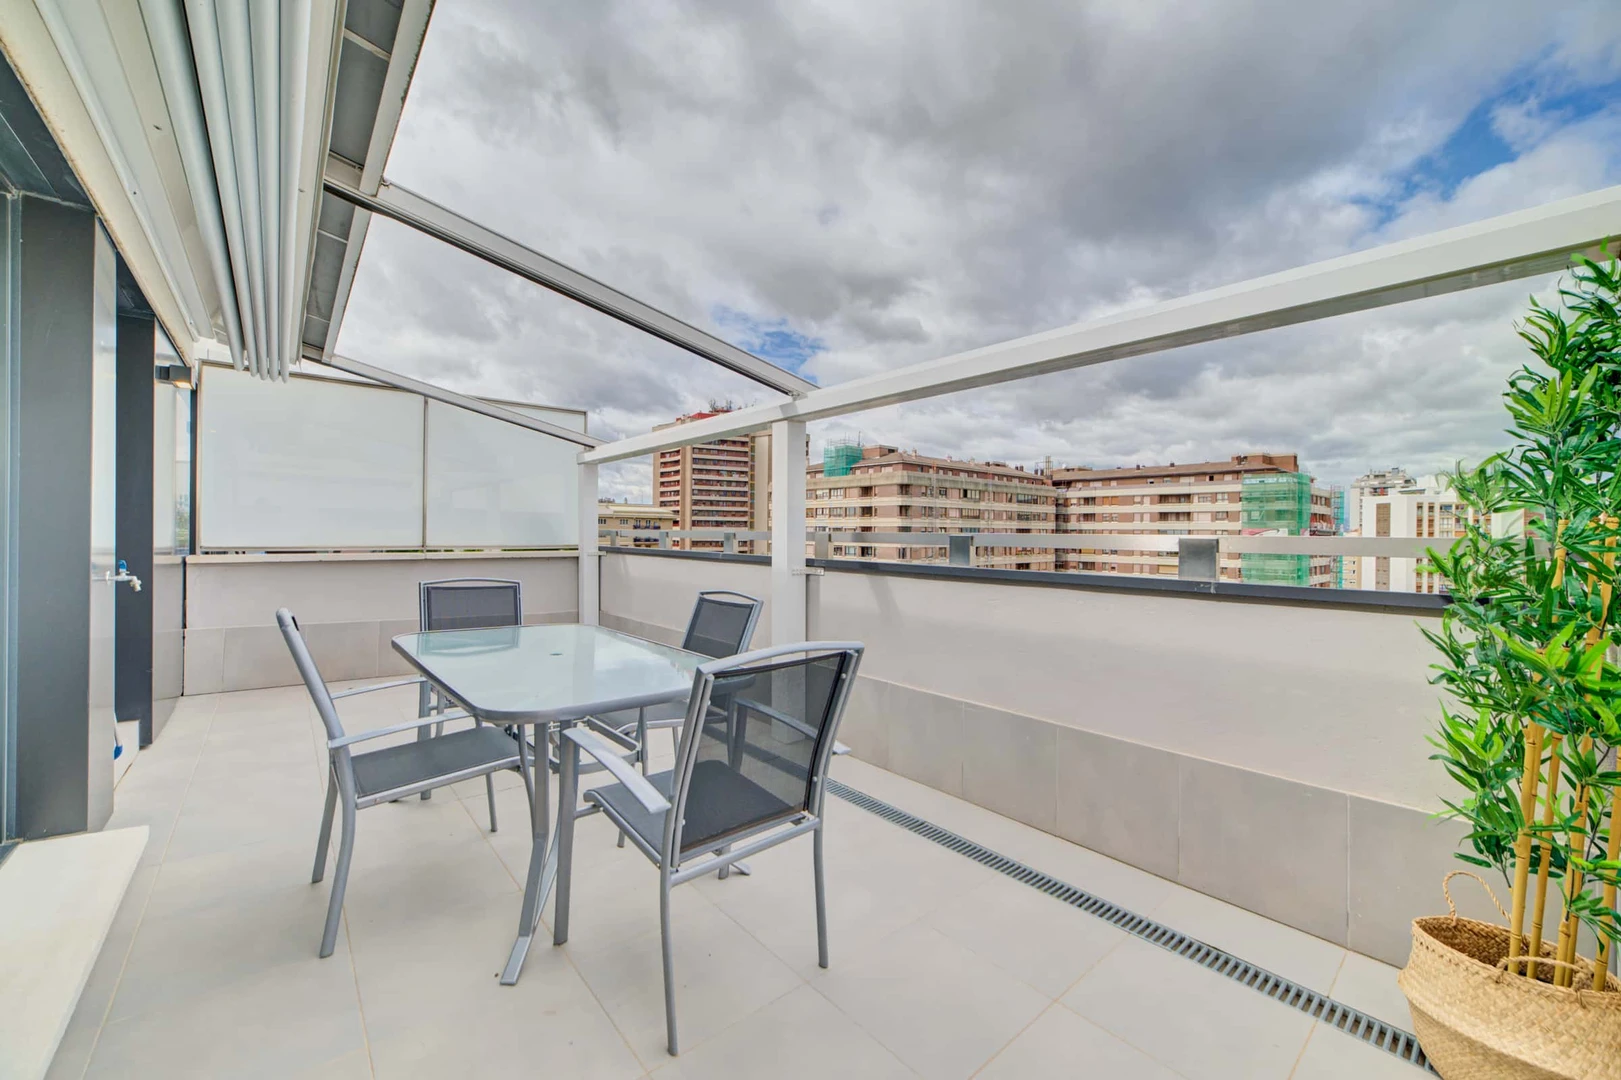 Appartement moderne et lumineux à Pamplona/iruña